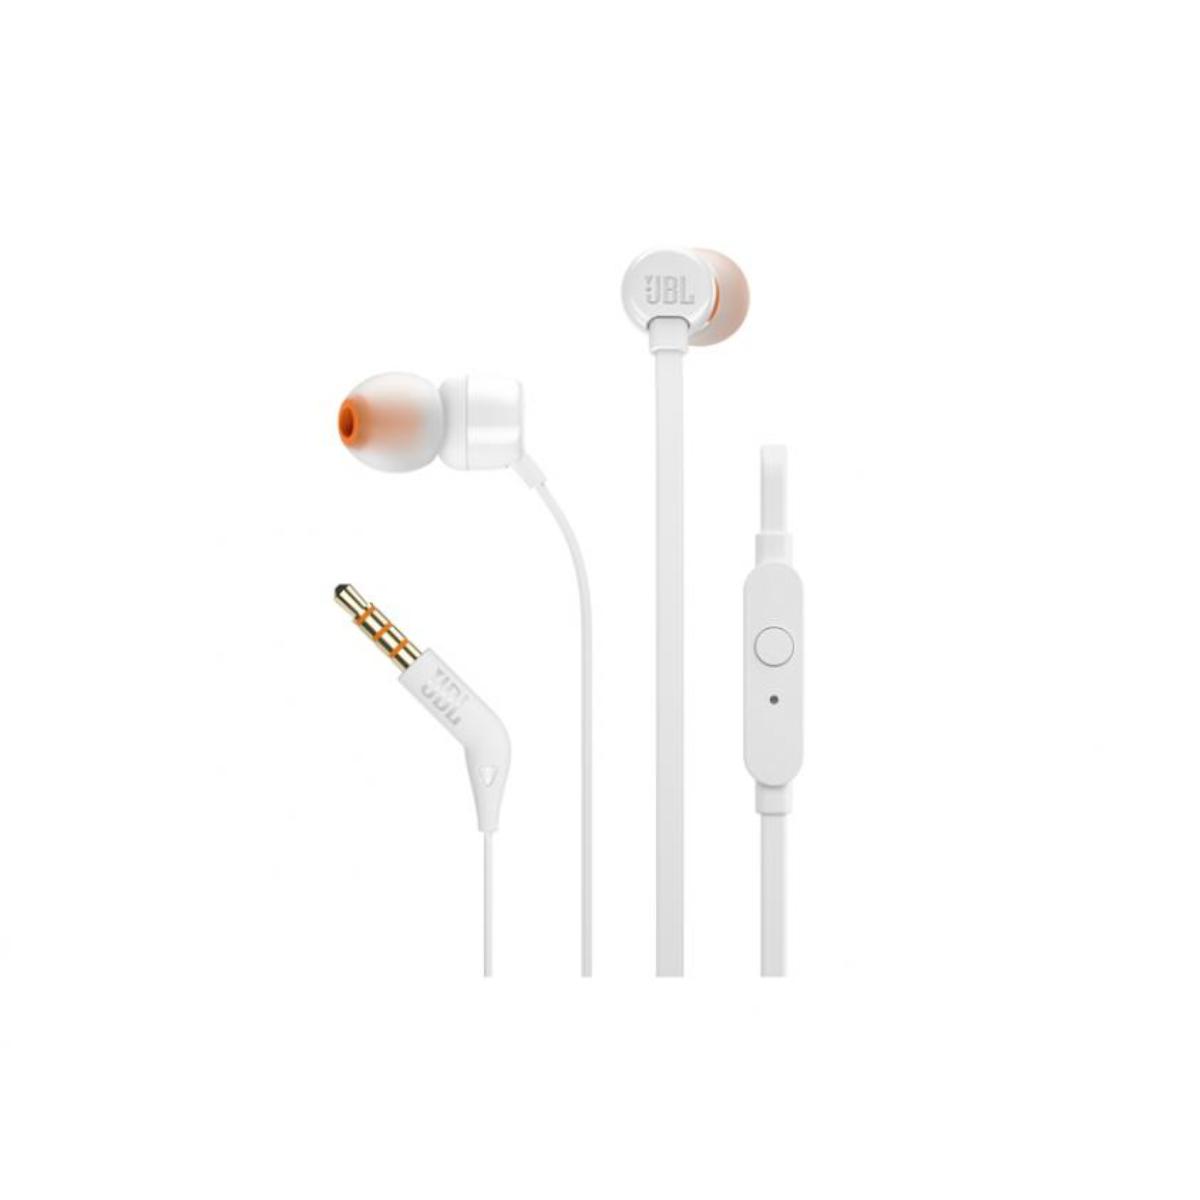 | | Buy Blue Jbl In-Ear JBL Smart Brands T110 Headphones |